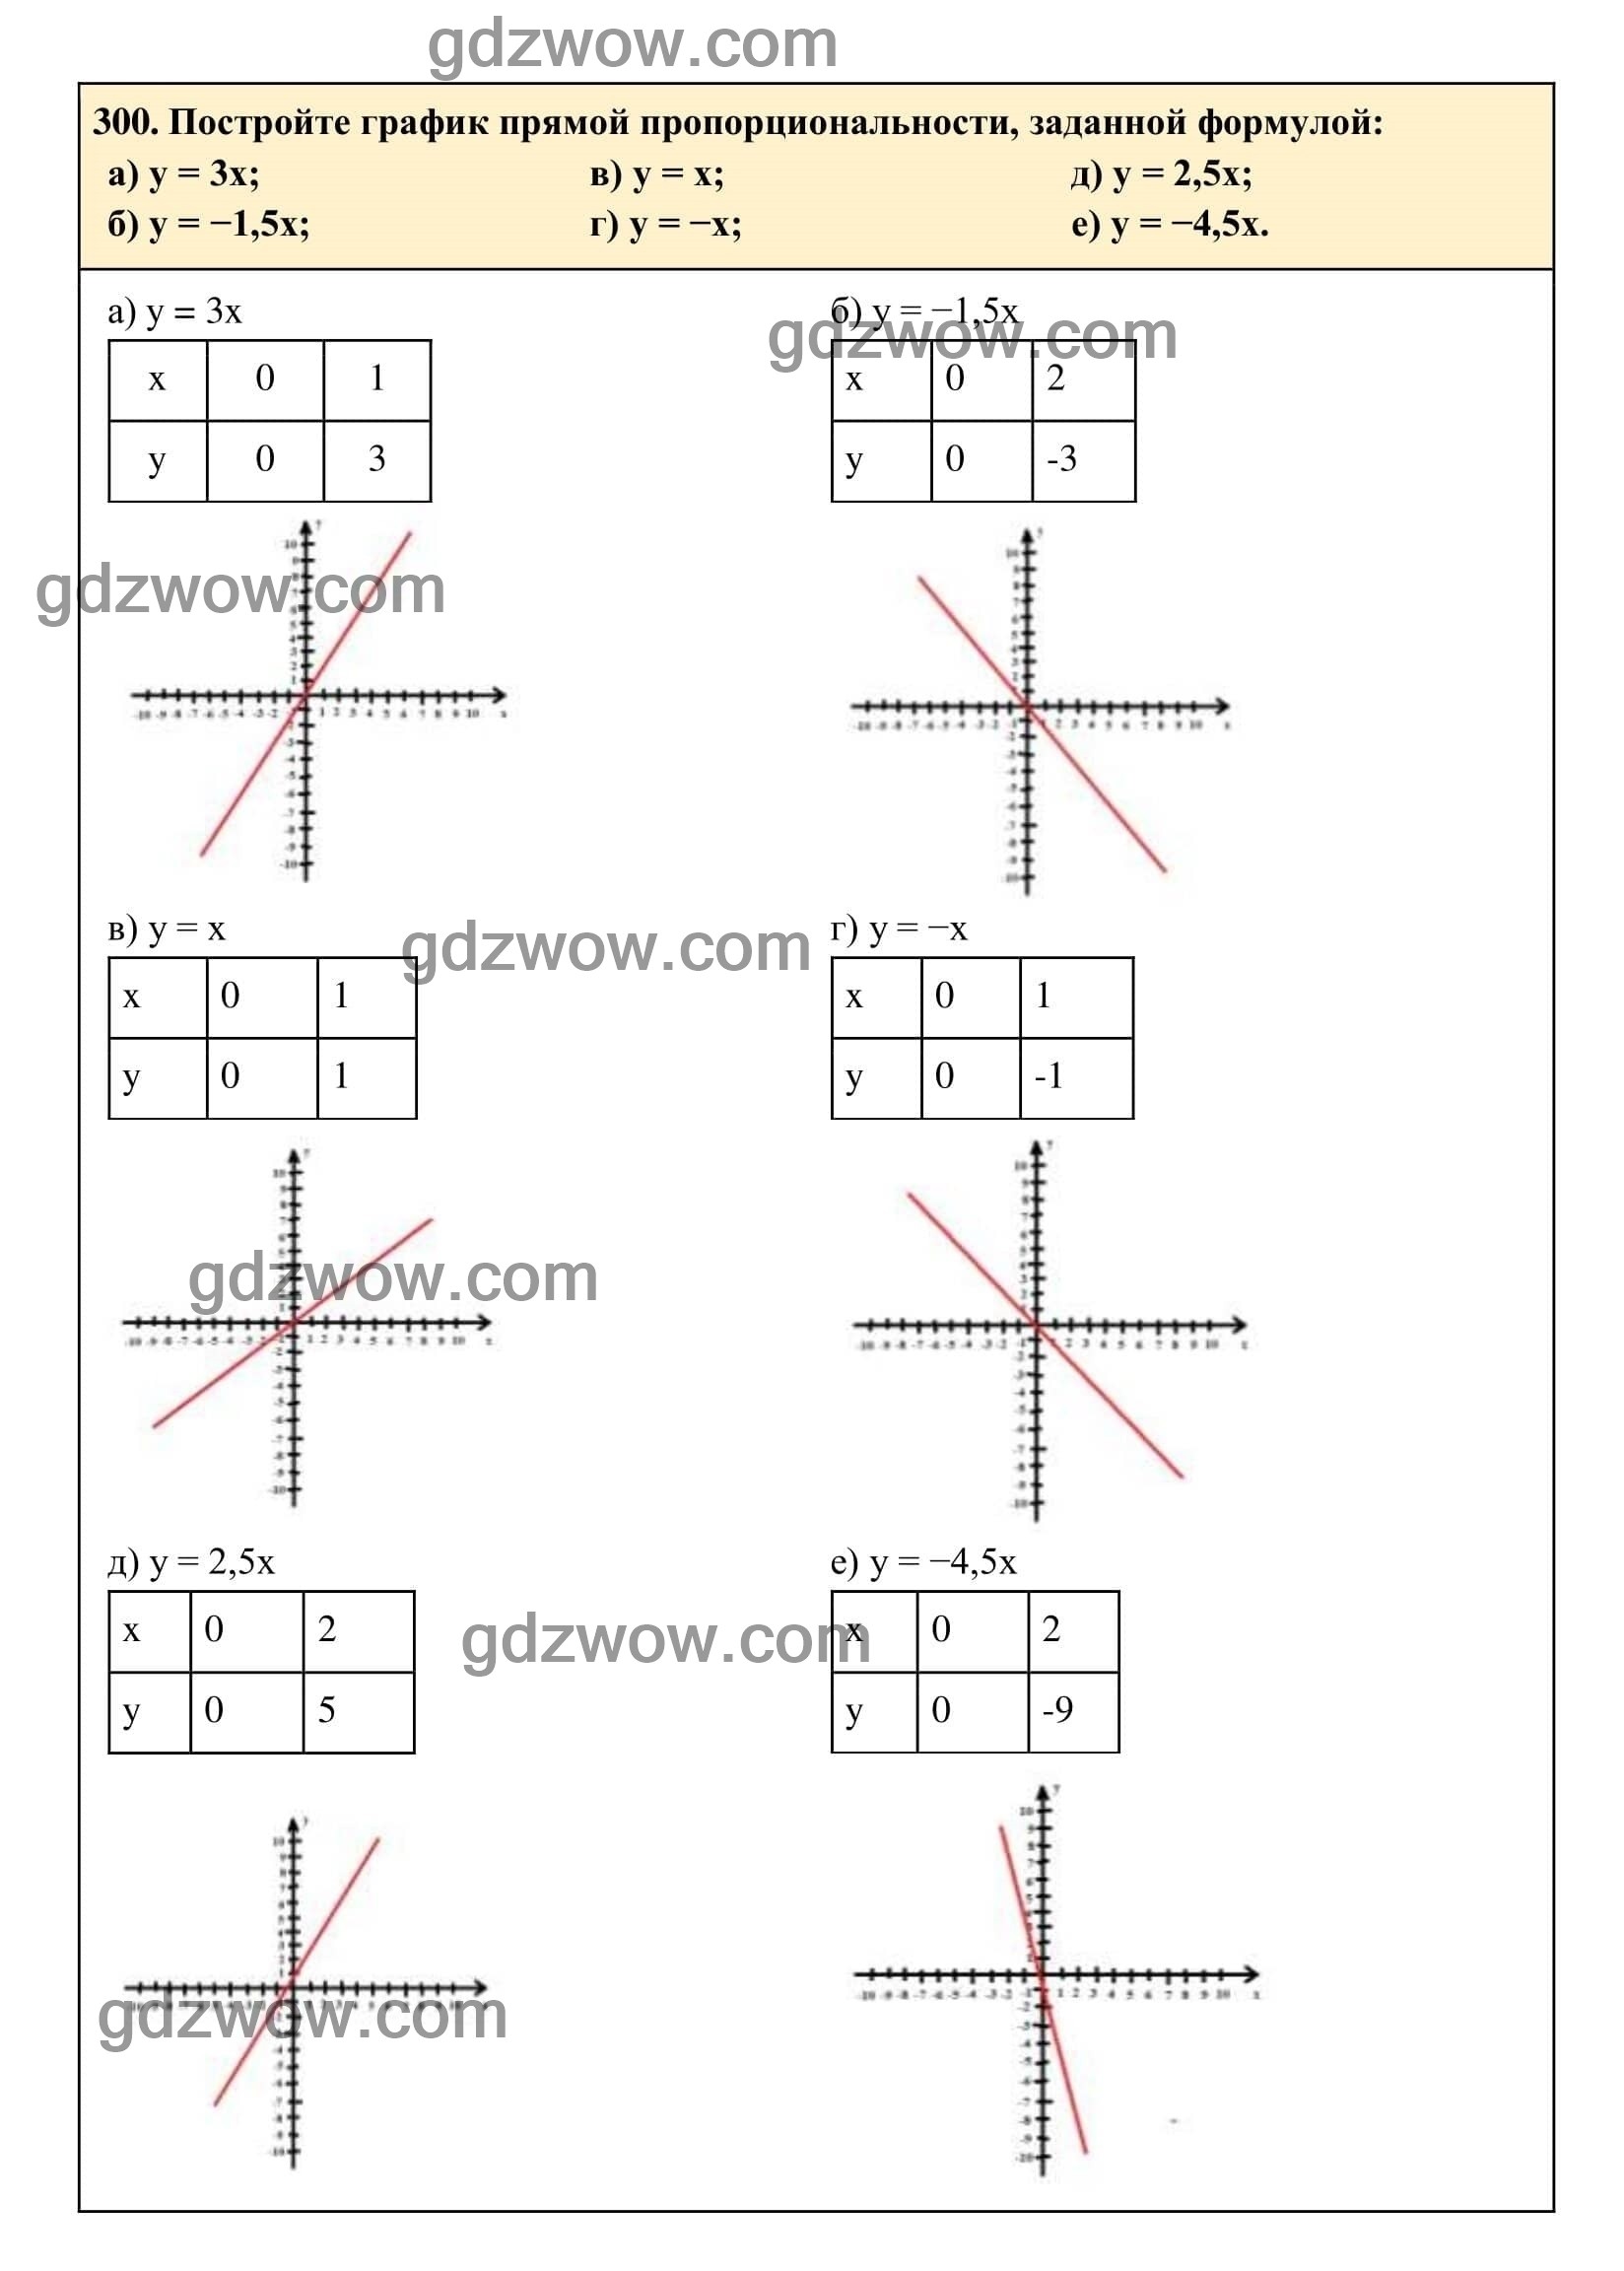 Упражнение 300 - ГДЗ по Алгебре 7 класс Учебник Макарычев (решебник) - GDZwow